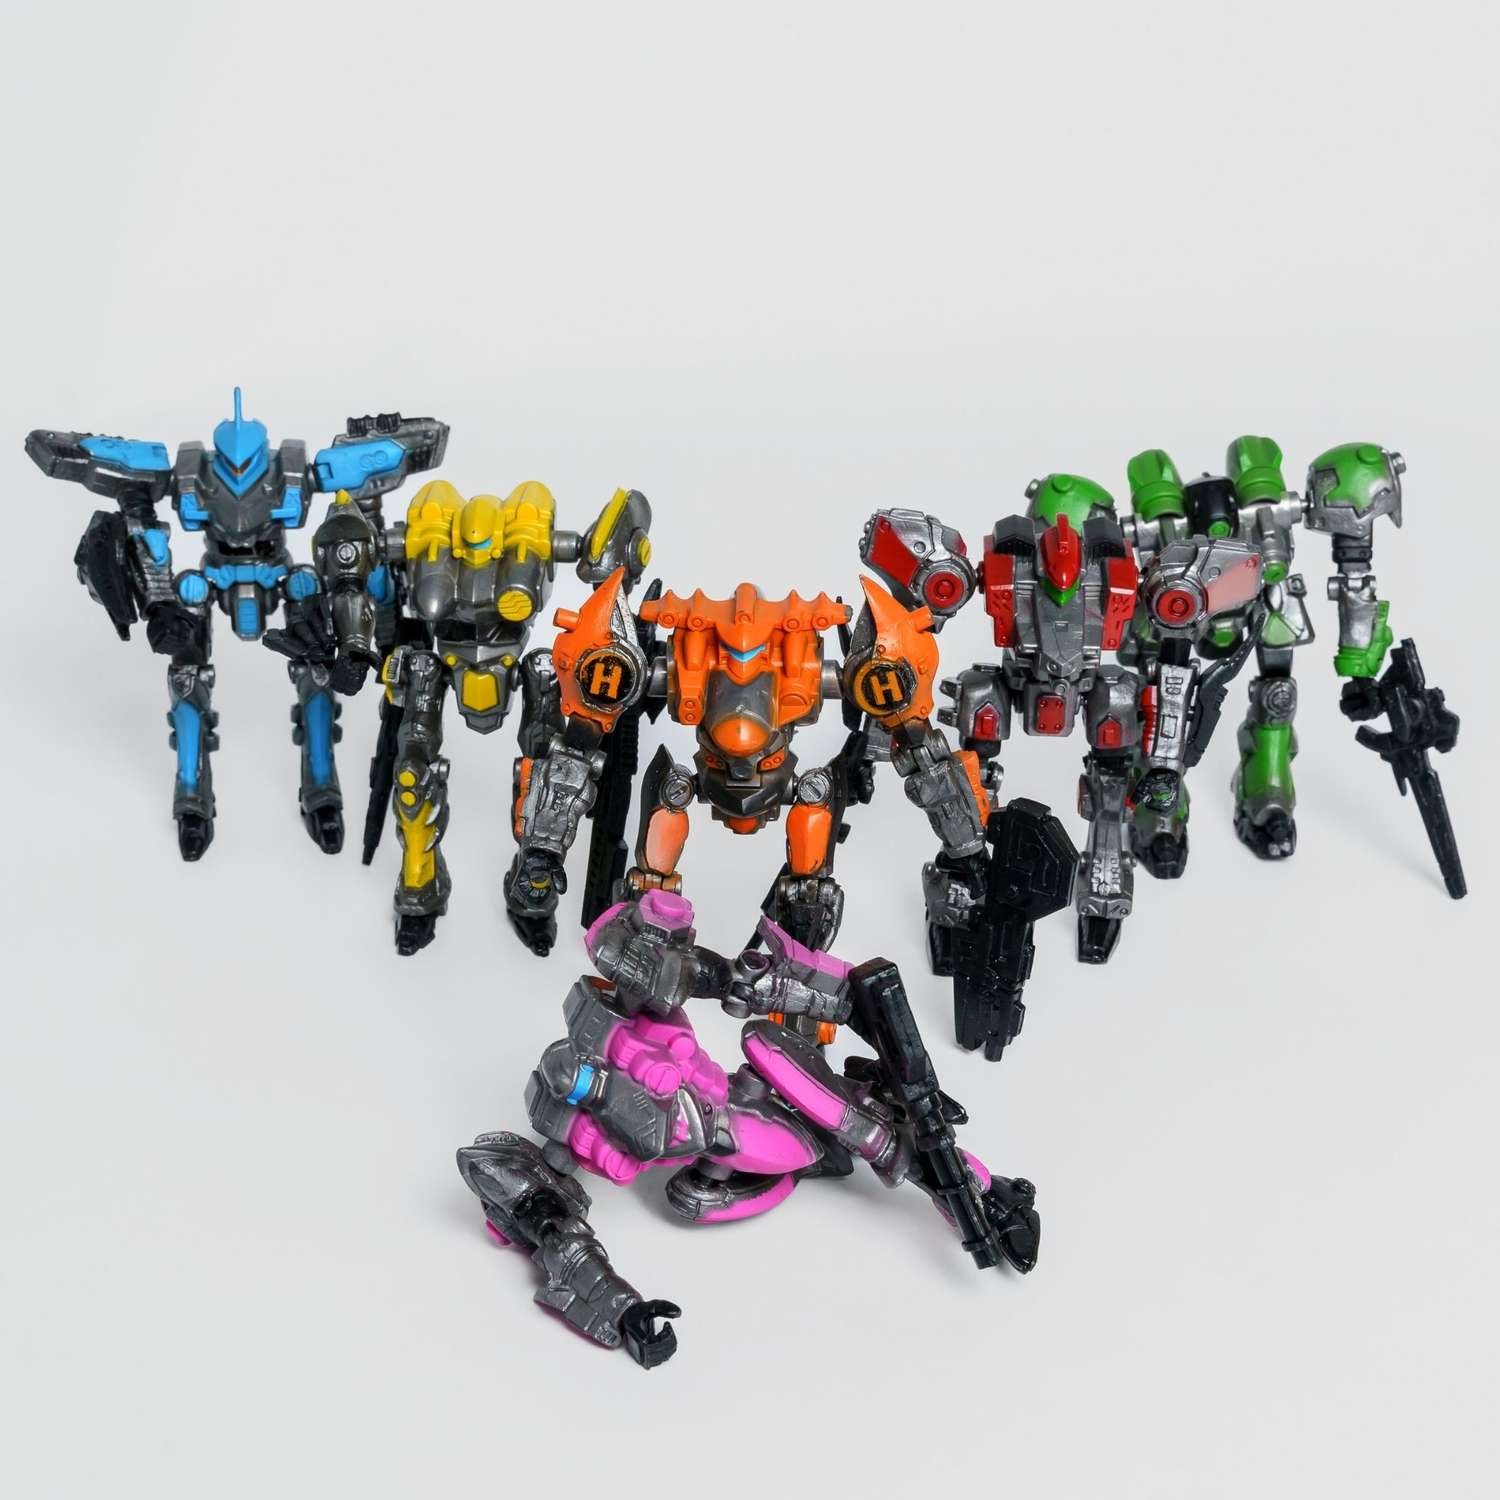 Роботы CyberCode 6 фигурок игрушки для детей развивающие пластиковые коллекционные интересные. 8см - фото 2